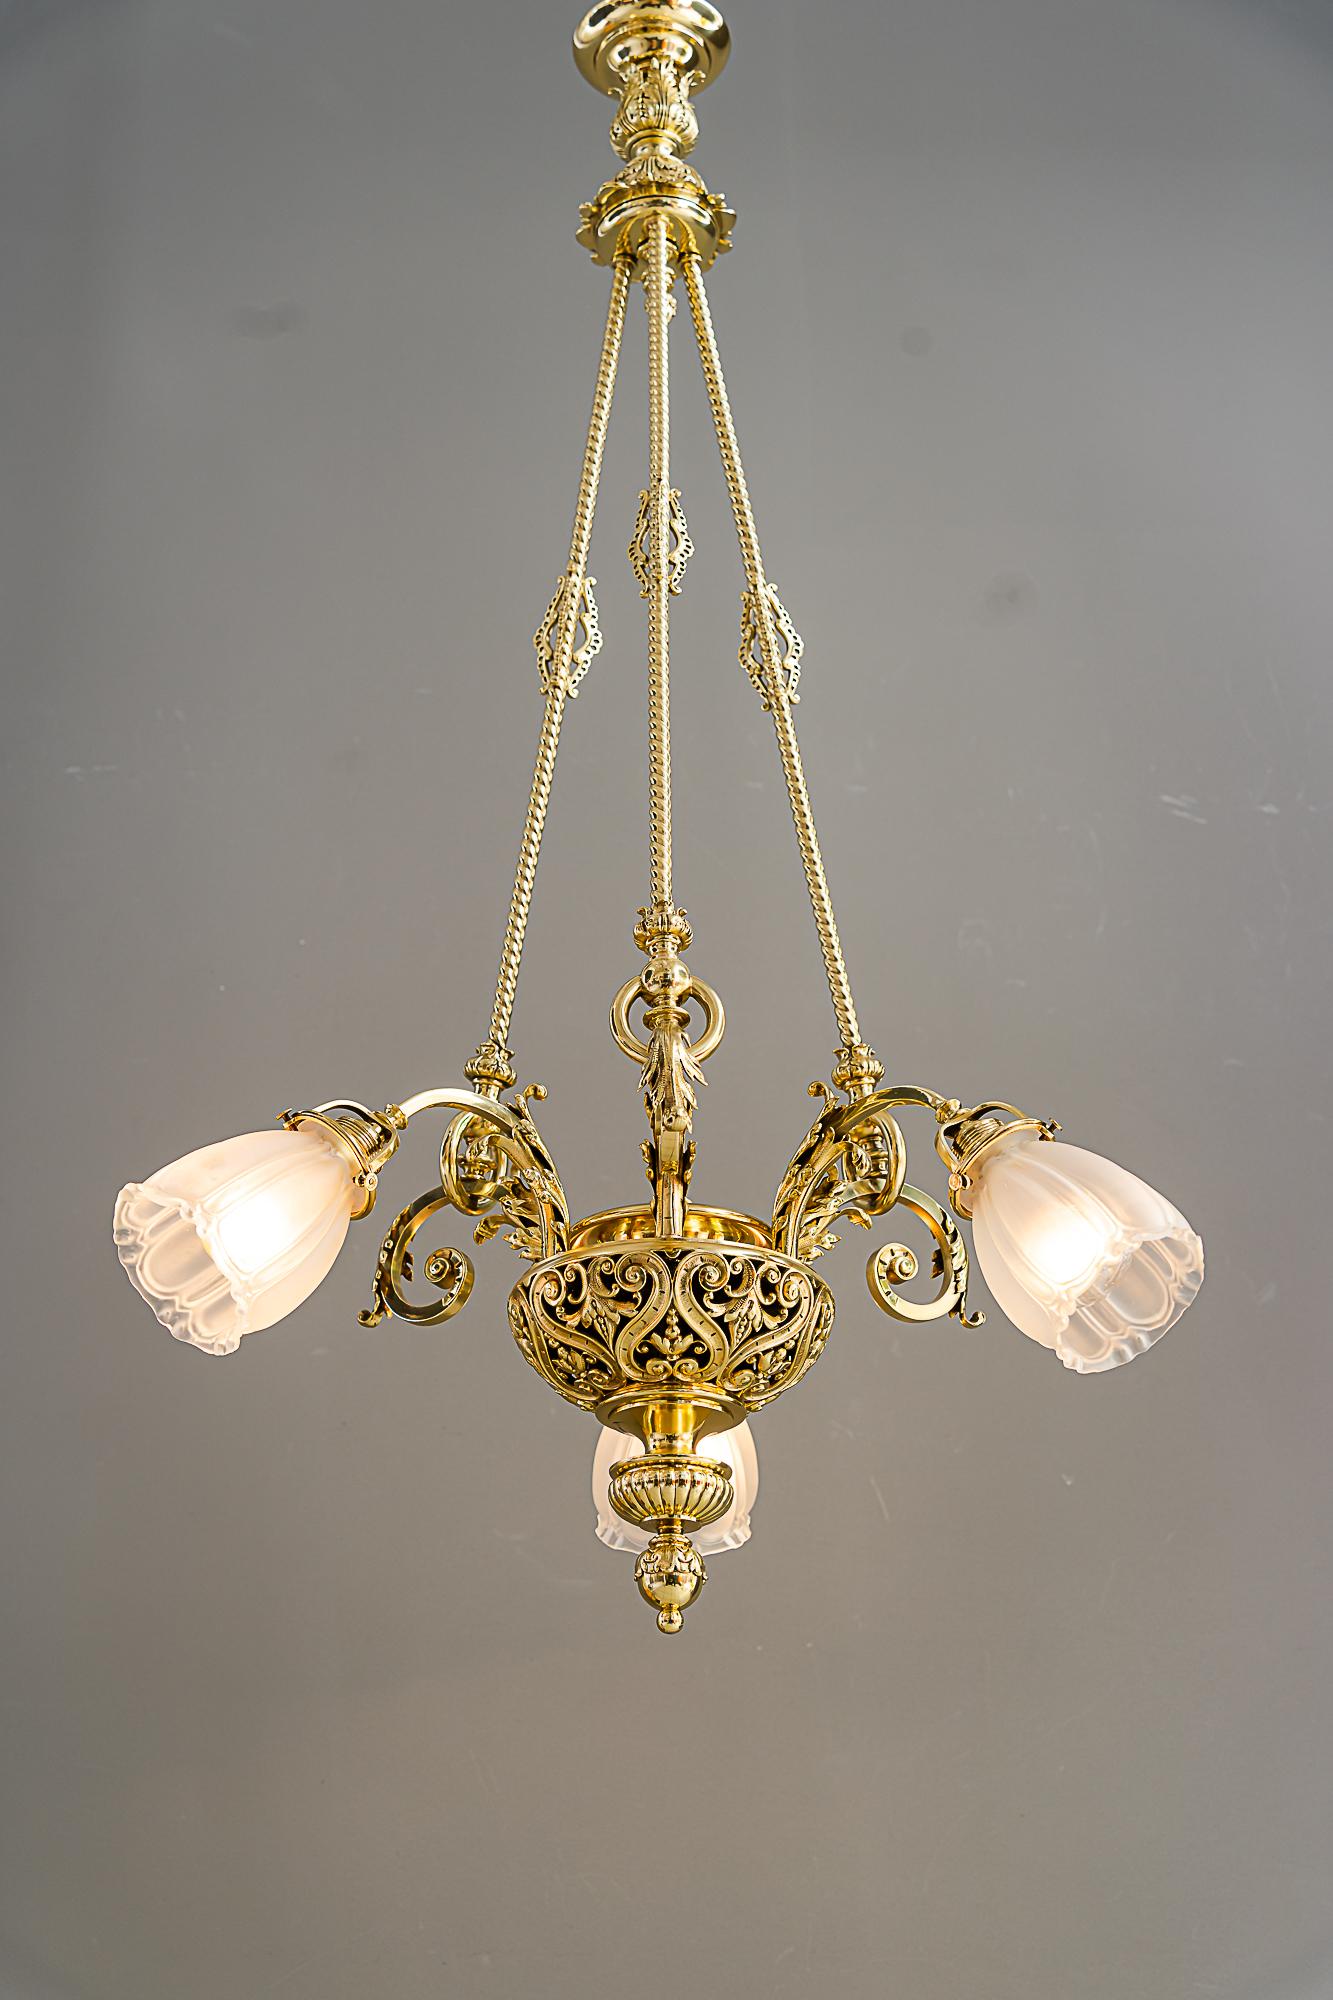 Historic chandelier vienna around 1890s with original antique glass shades For Sale 12